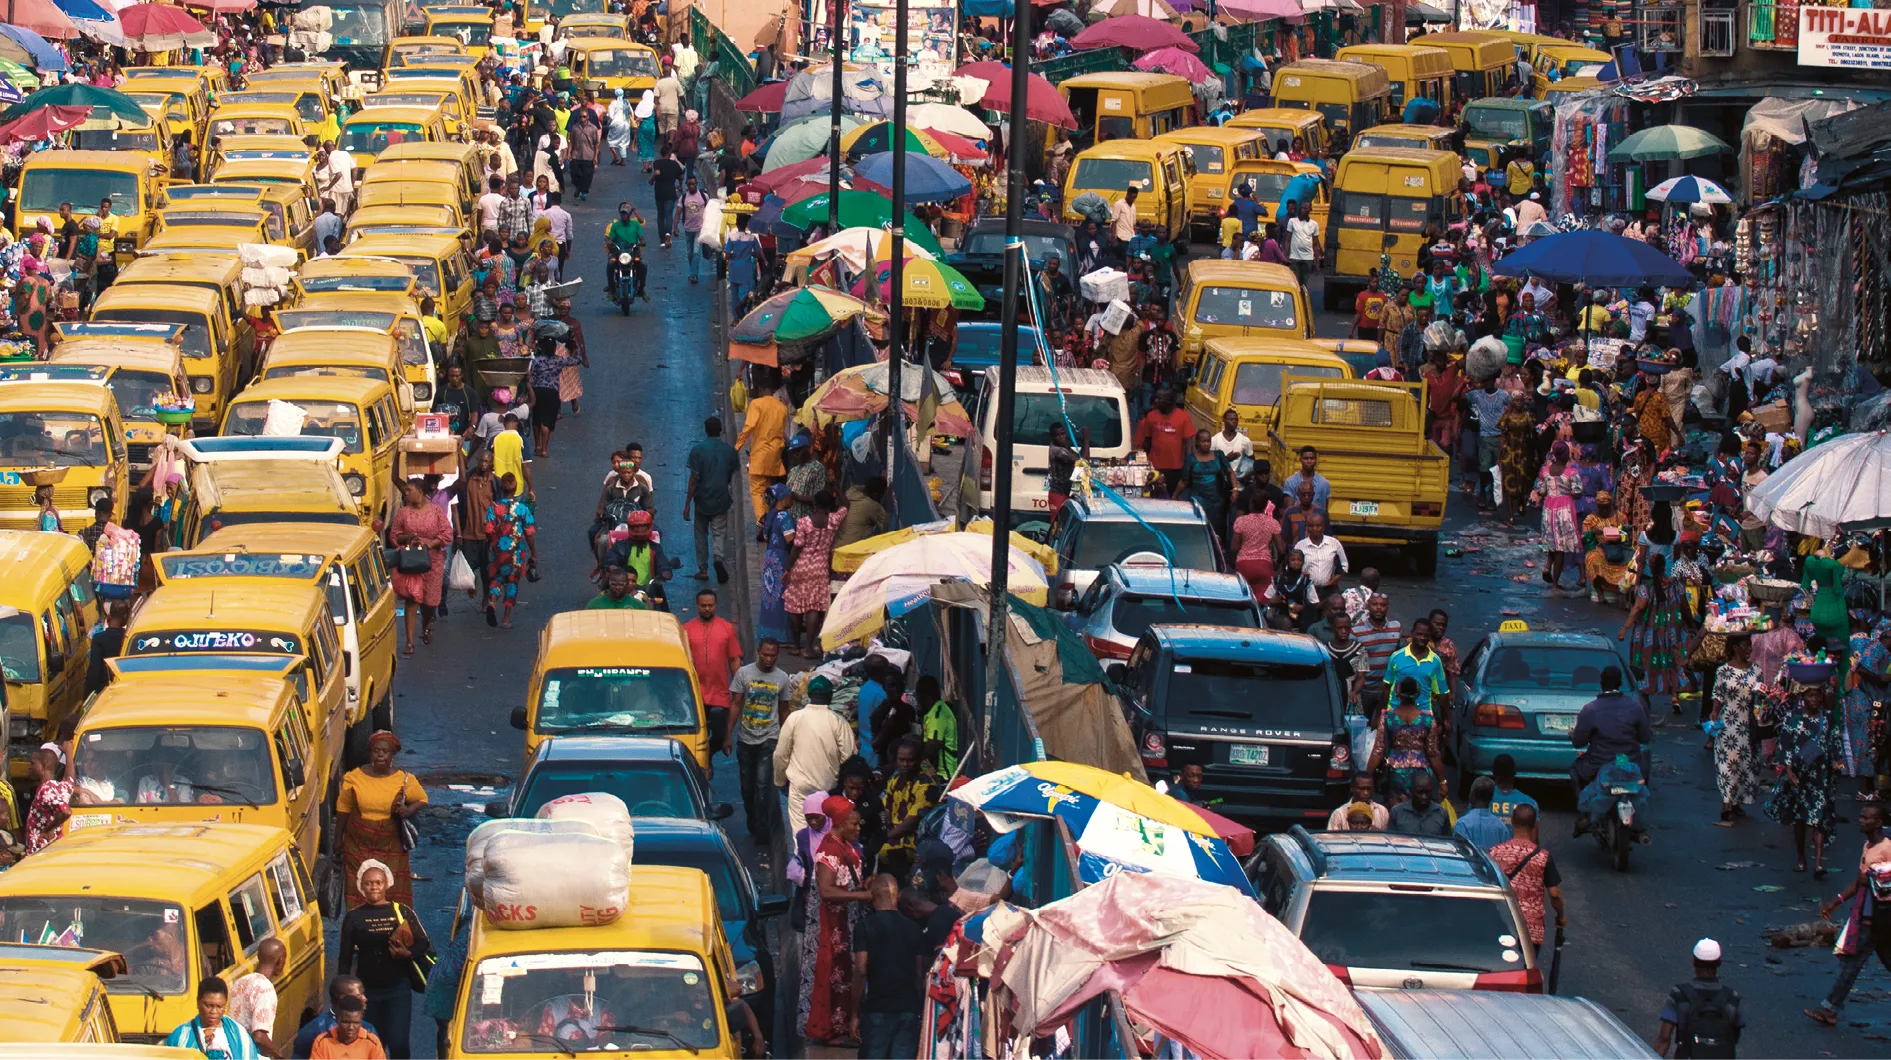 Embouteillage dans une rue commerçante à Lagos, Nigéria, 2019.